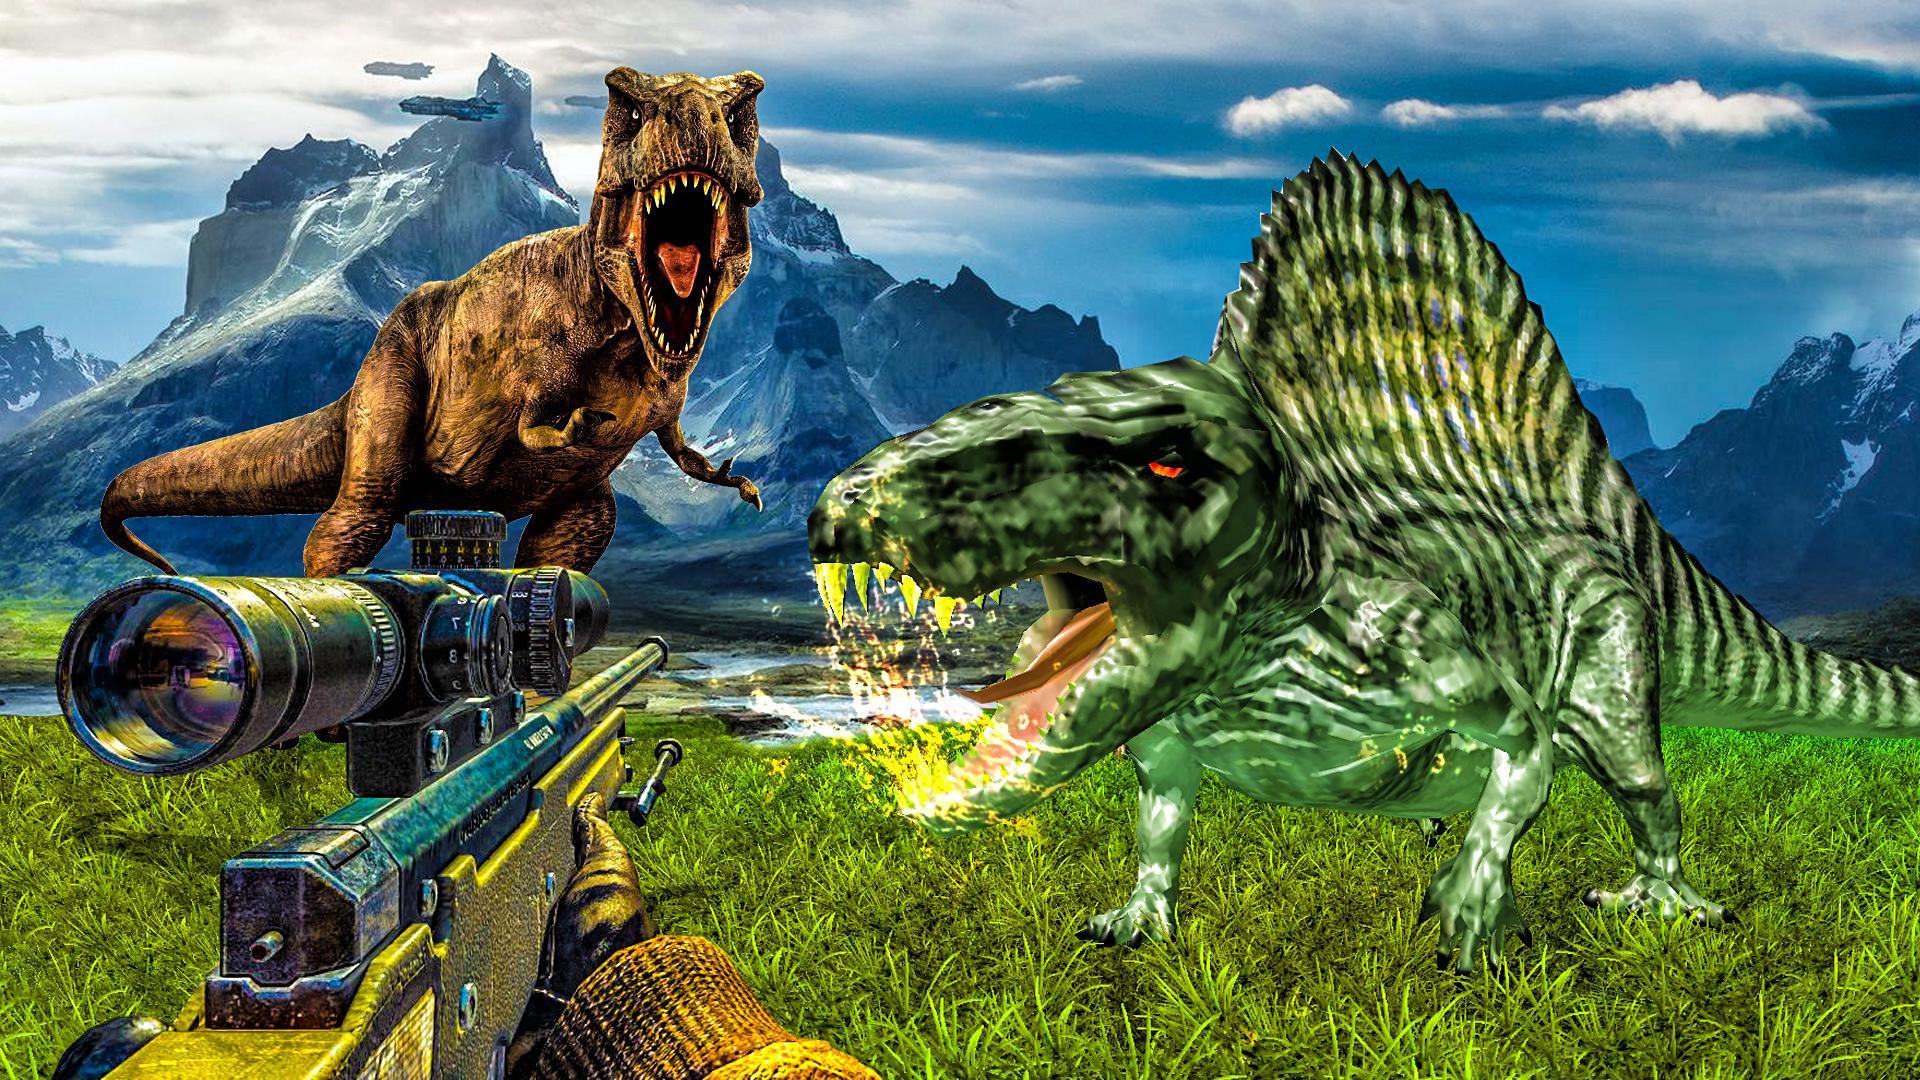 Carnivores Dino hunter game-Dinosaur game shooting 9.1 Screenshot 4